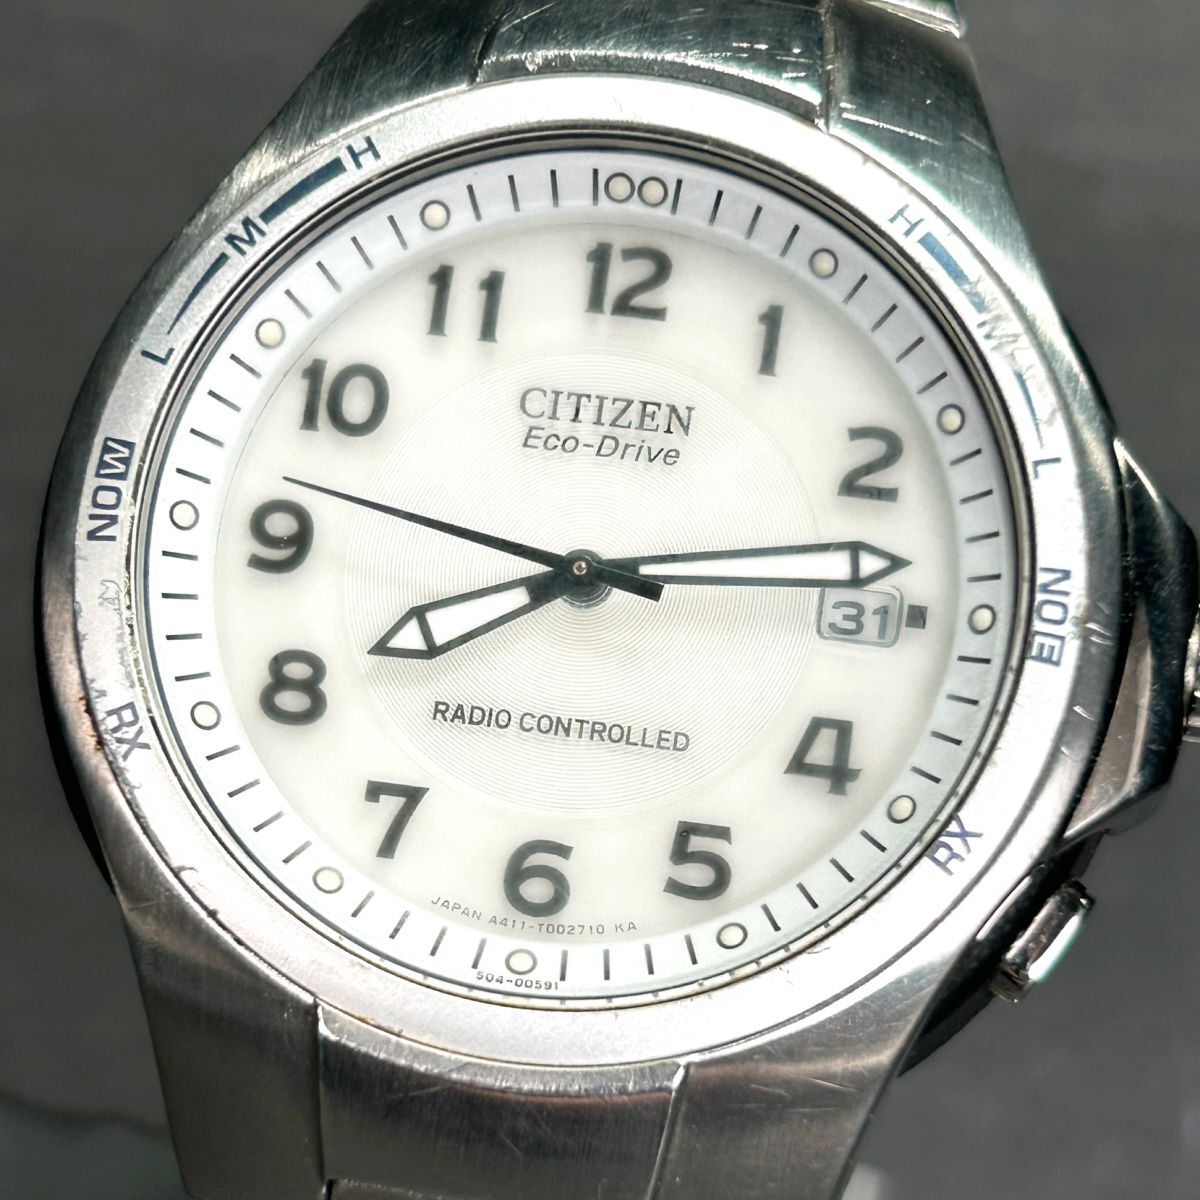 CITIZEN シチズン エコドライブ A411-T001521 腕時計 ソーラー 電波時計 アナログ 3針 カレンダー メタルバンド シルバー ホワイト文字盤の画像2